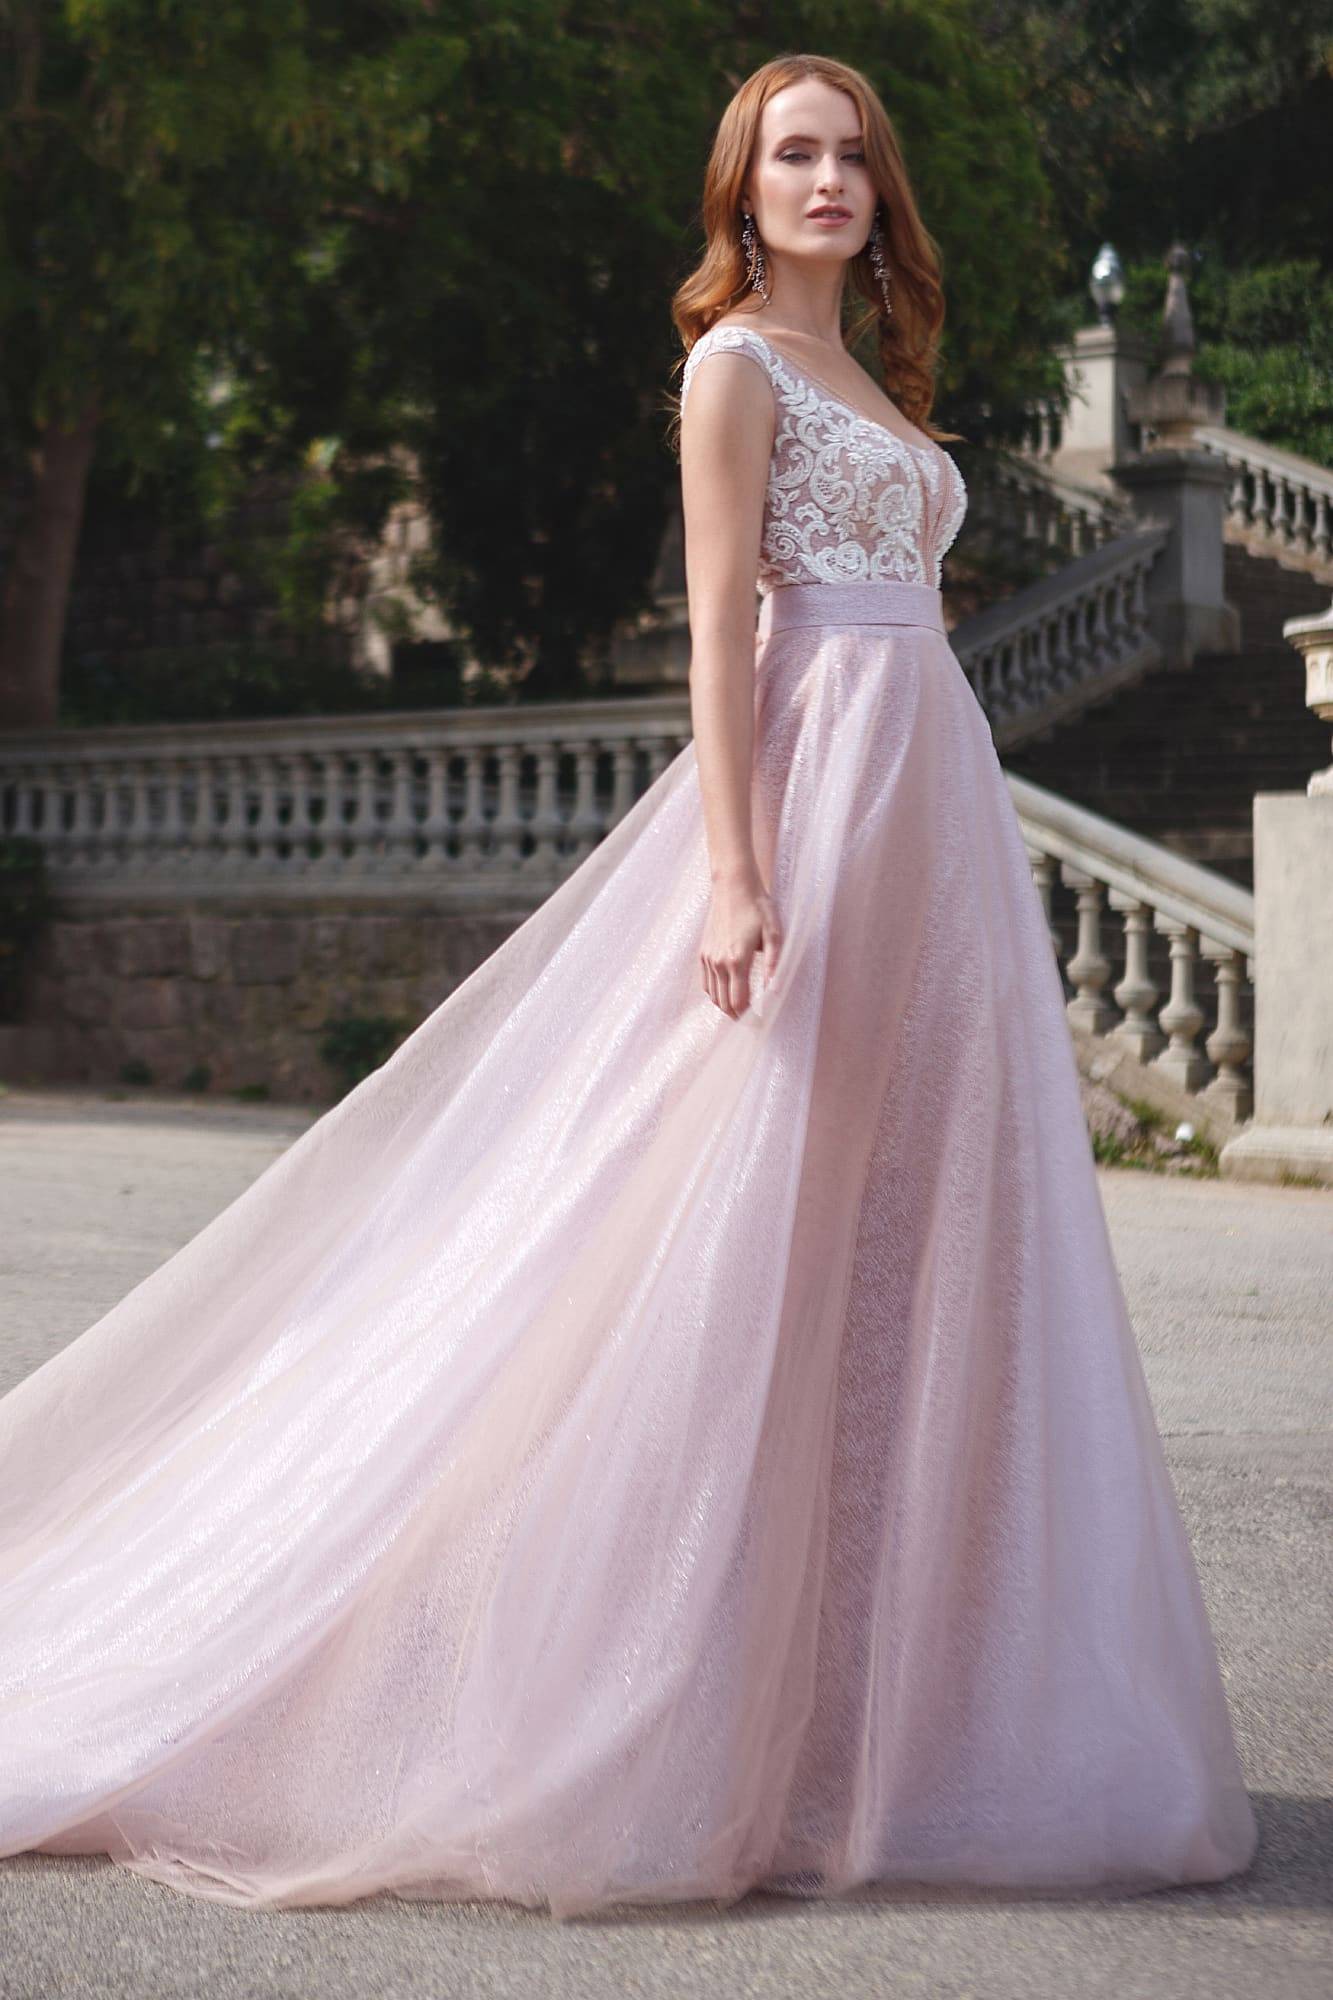 Короткое белое платье (80 фото): пышное, летнее, бело-розового цвета, спереди короткое сзади длинное